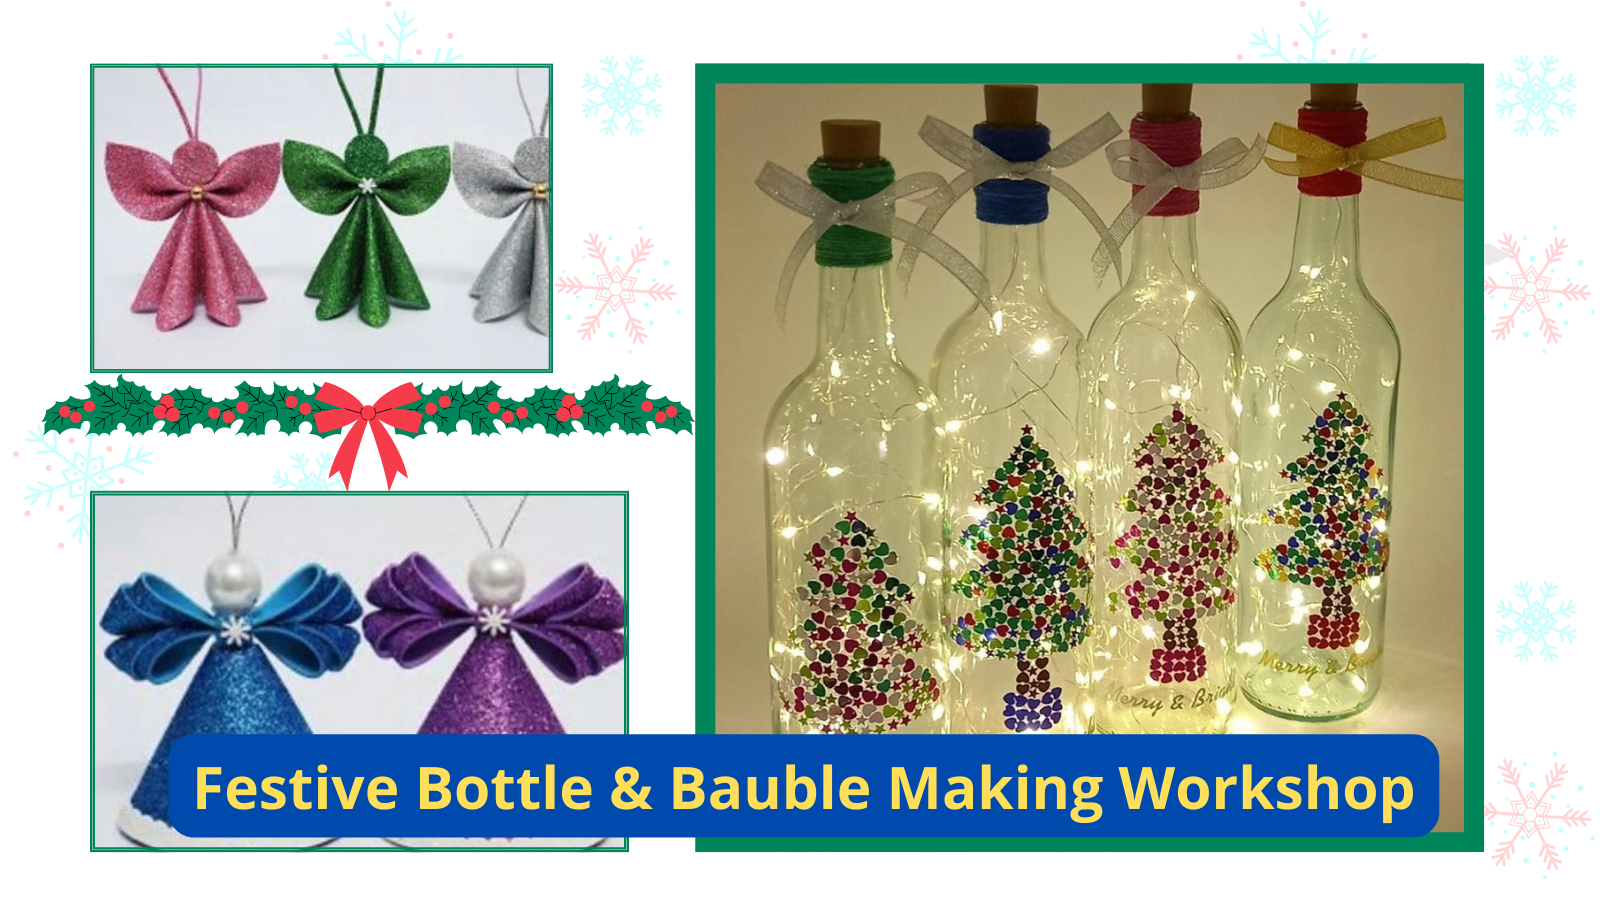 Festive Bottle & Bauble Making Workshop